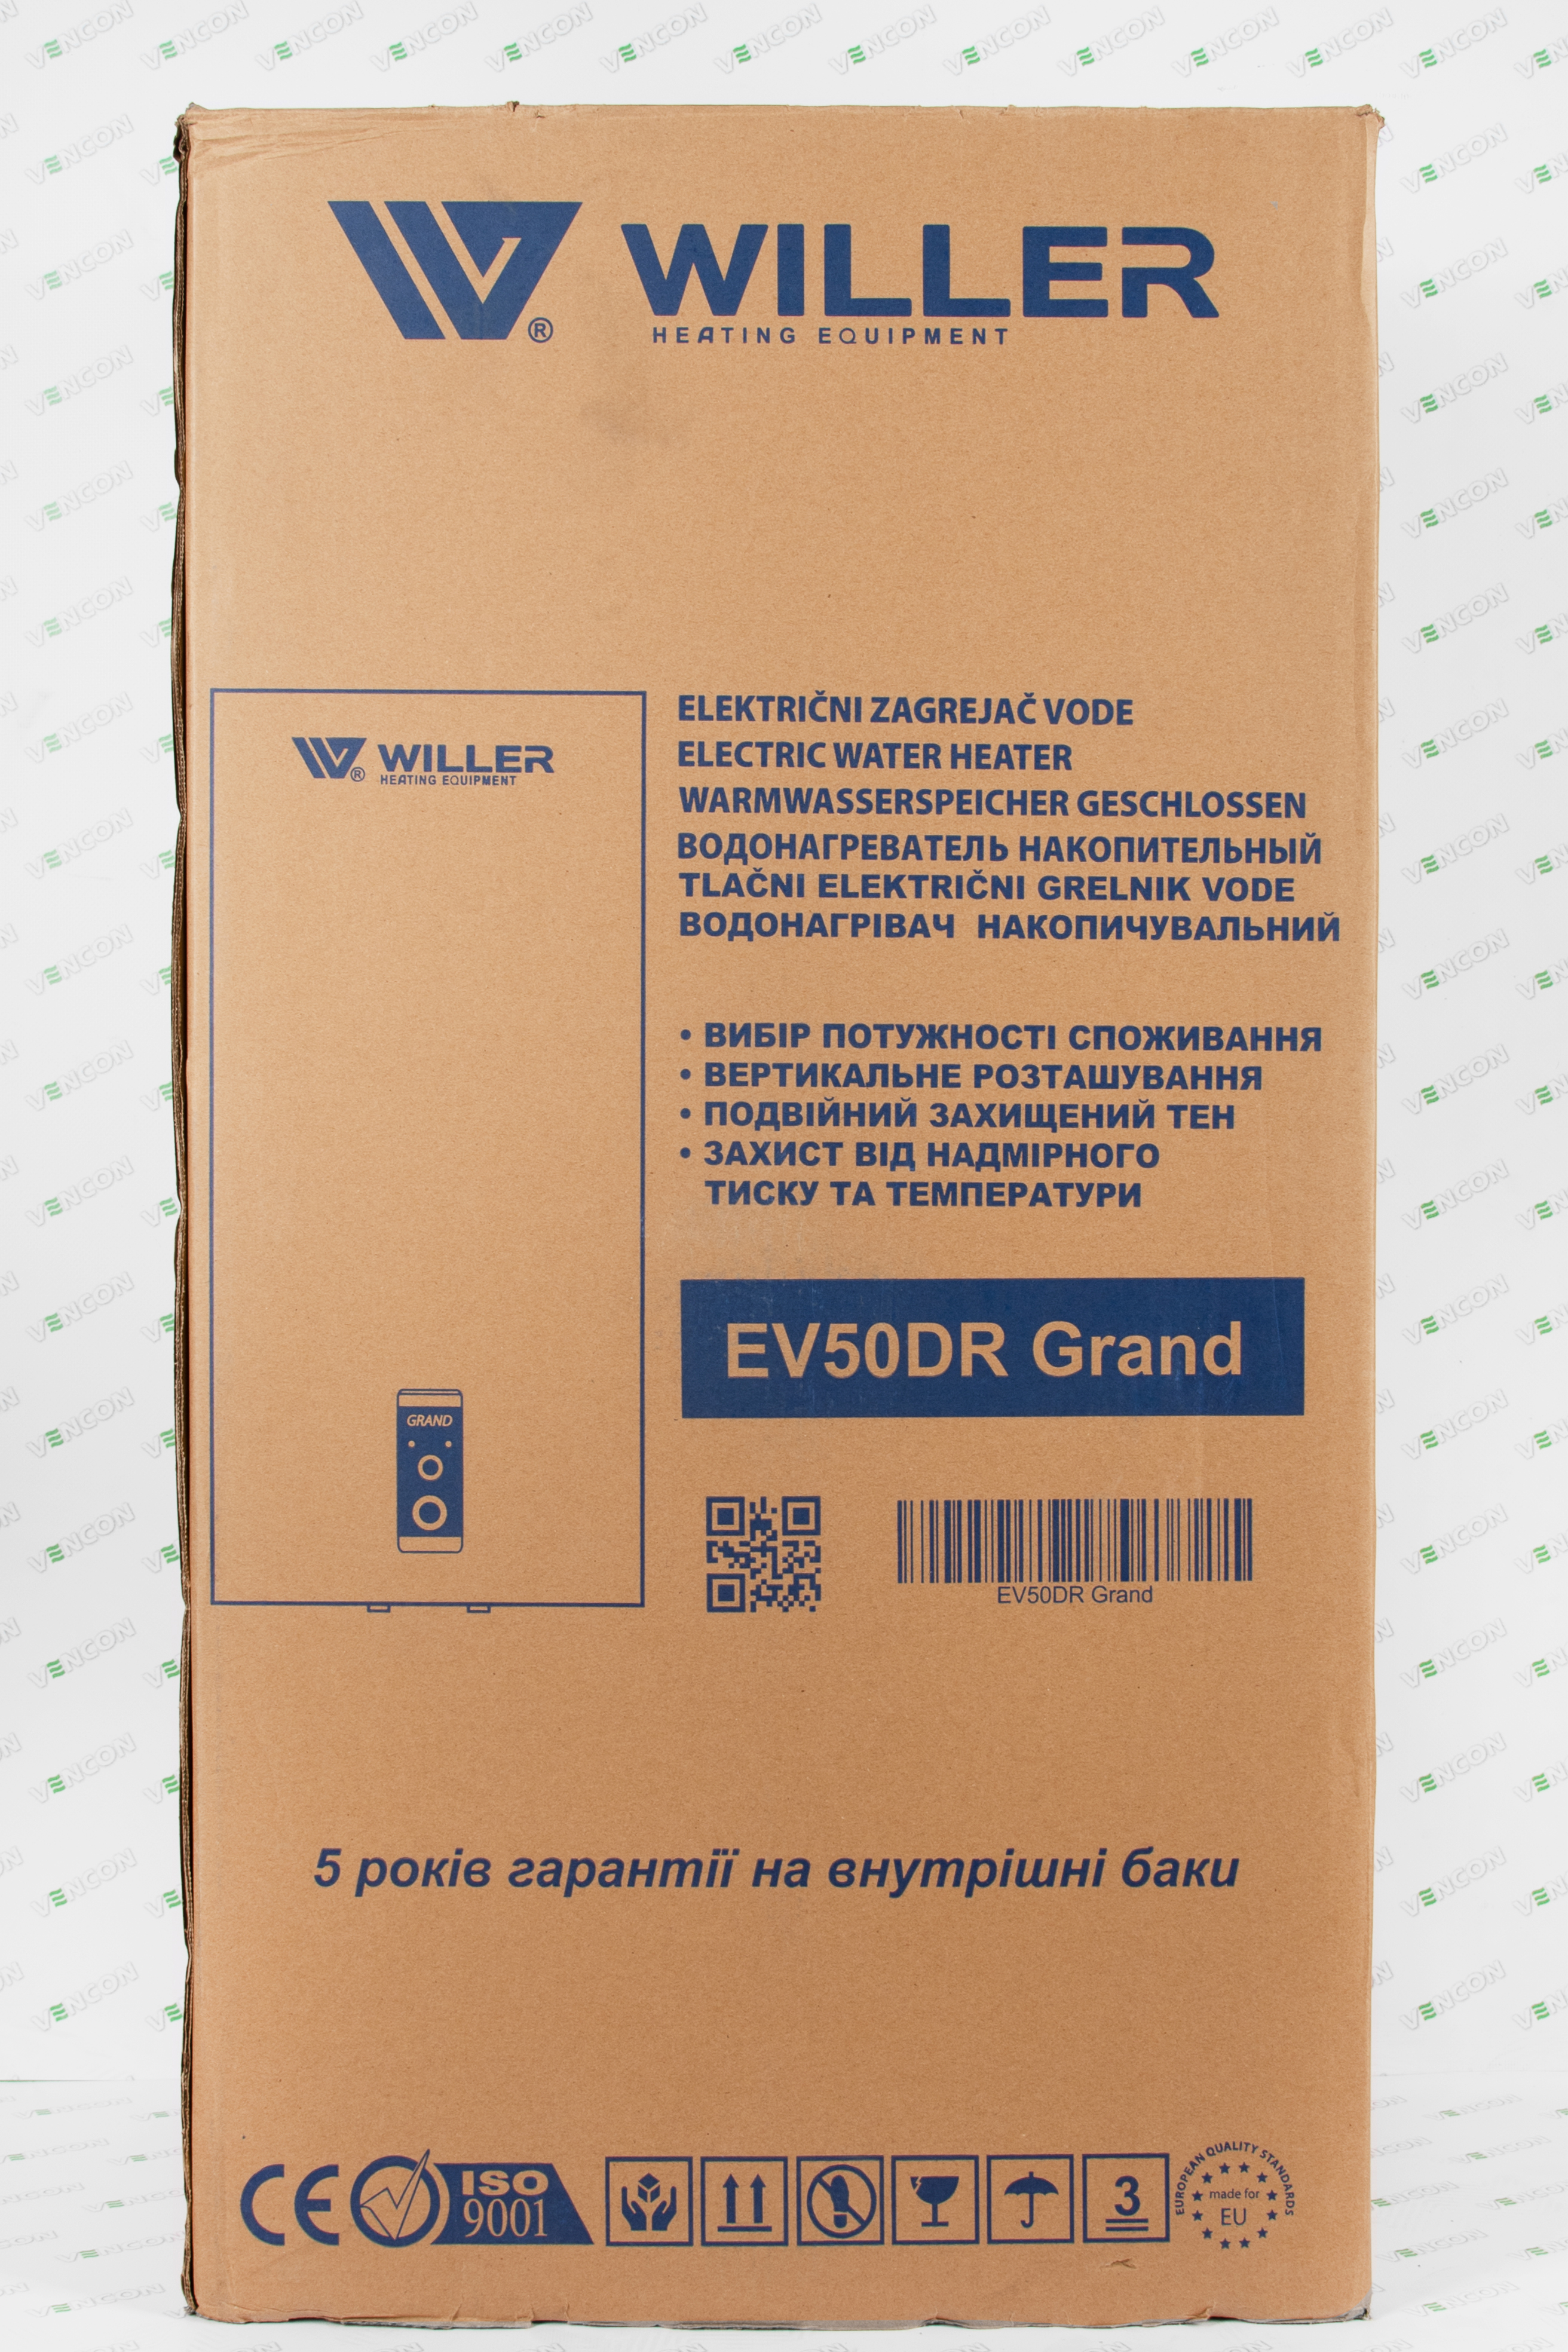 картка товару Willer Grand EV50DR - фото 16